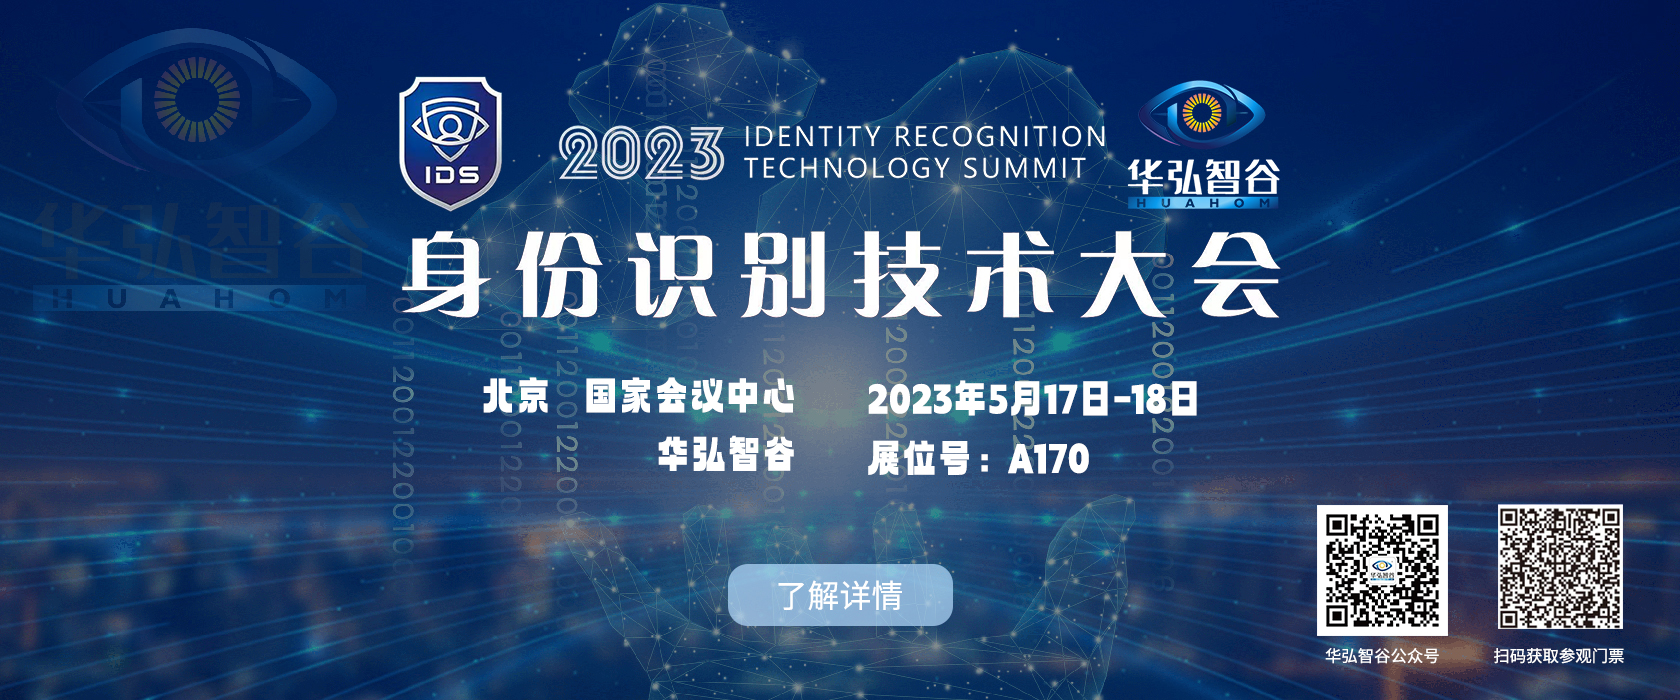 2023 IDS｜华弘智谷邀您共赴第十七届证卡票签安全识别技术展览会暨2023身份识别技术大会